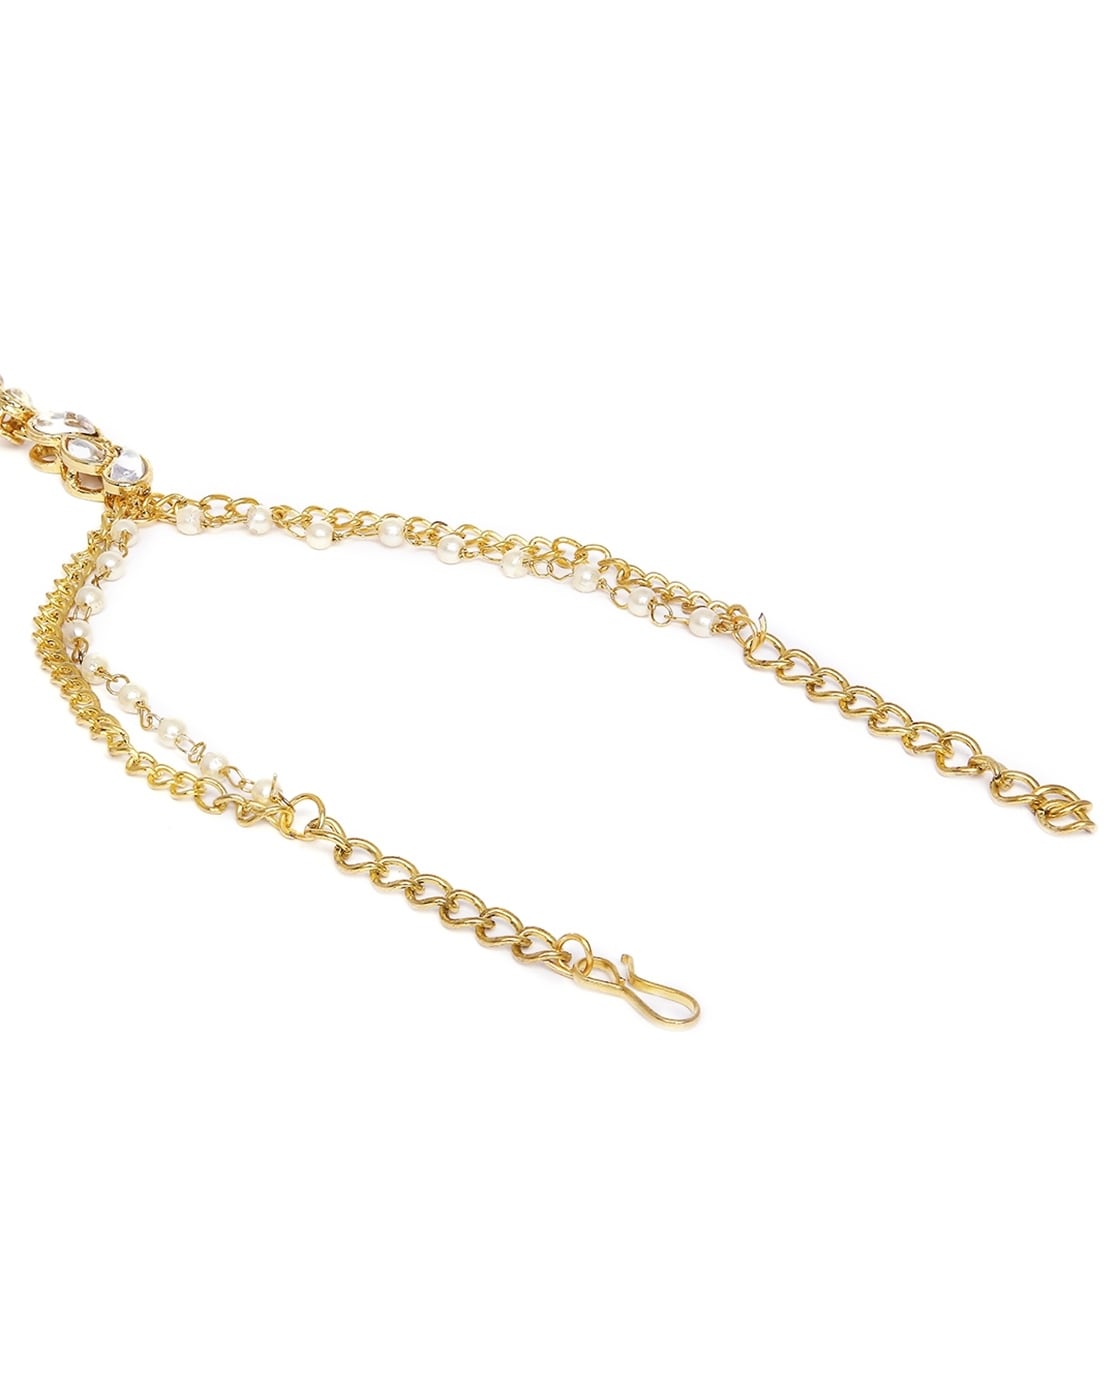 Buy Bracelet Set, Stack Bracelet, Chunky Paperclip Bracelet, Gold Chain  Bracelet Women, 18K Gold Filled Chain Bracelet, Gold Link Bracelet Online  in India - Etsy